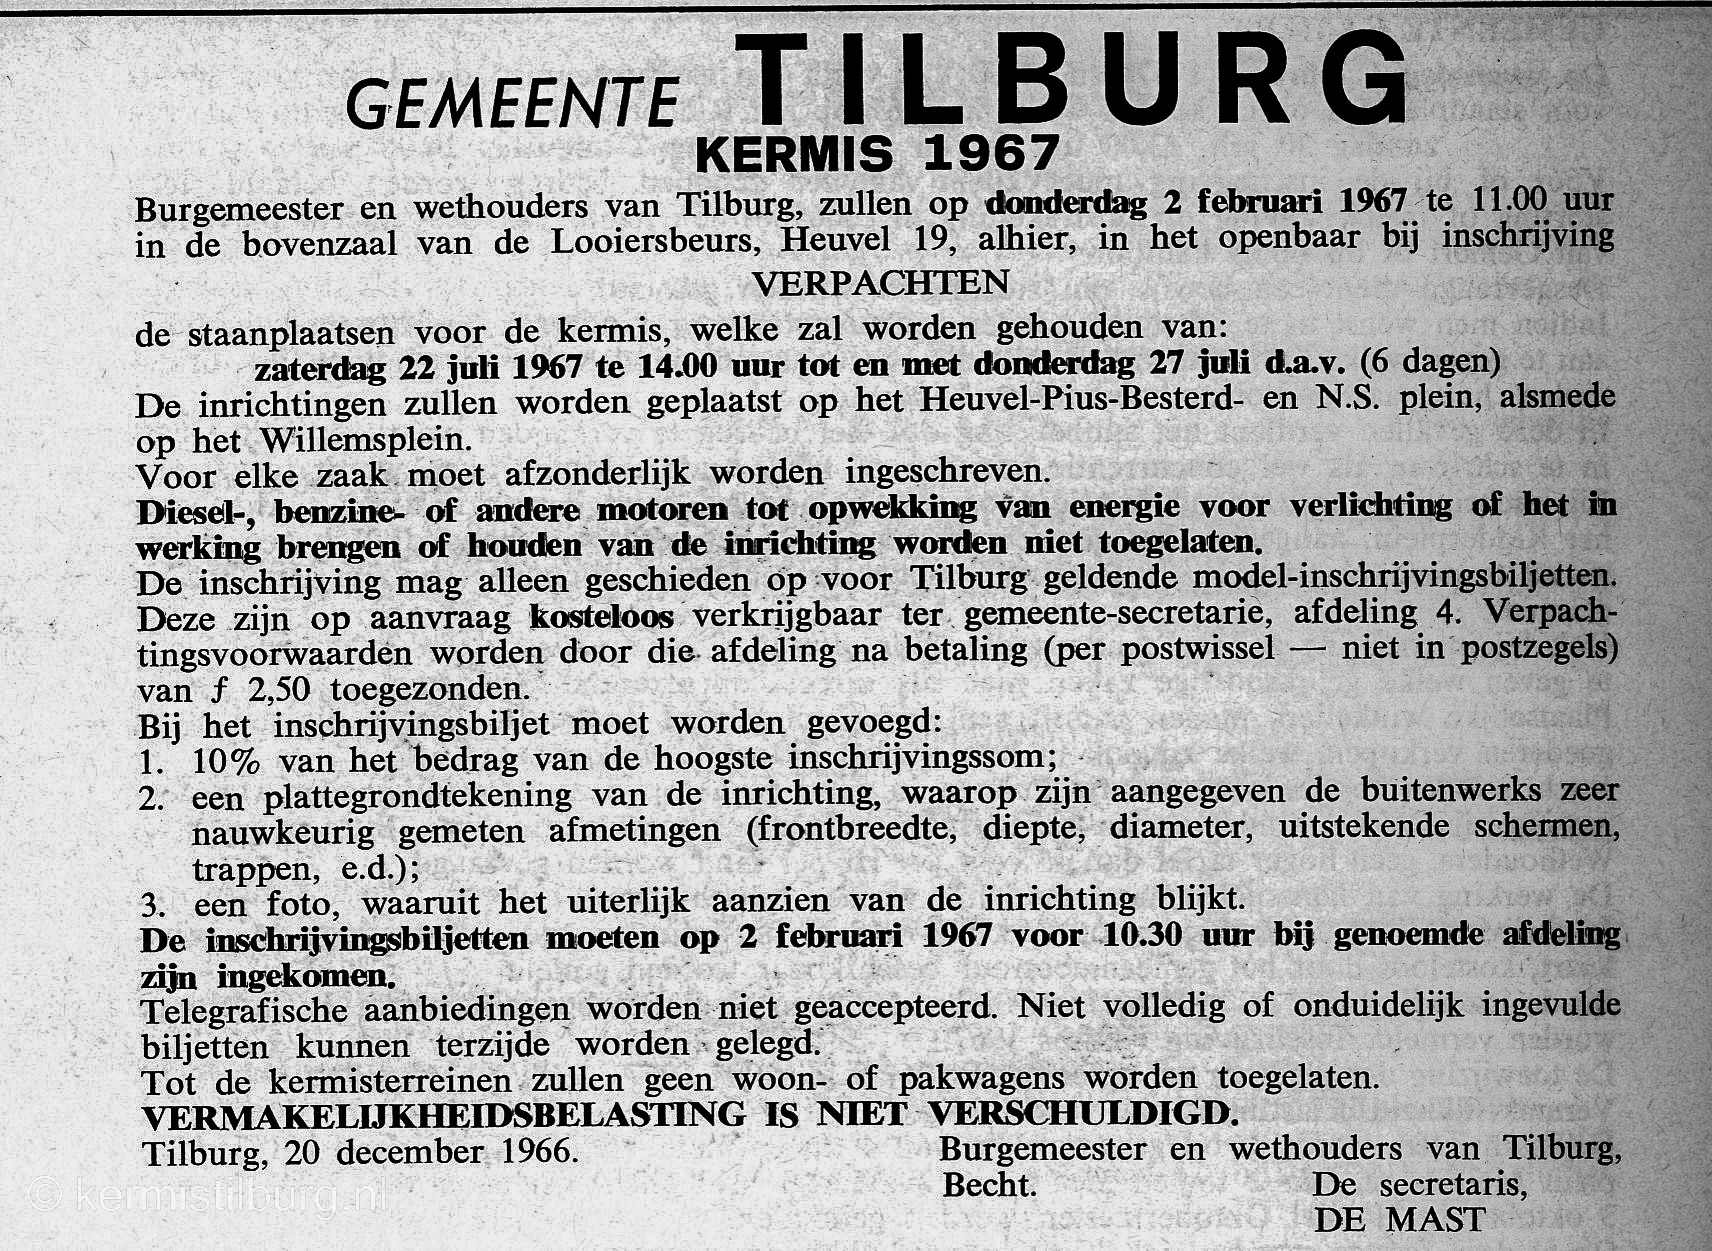 1967, Kermis, Tilburg, Tilburgse kermis, skc